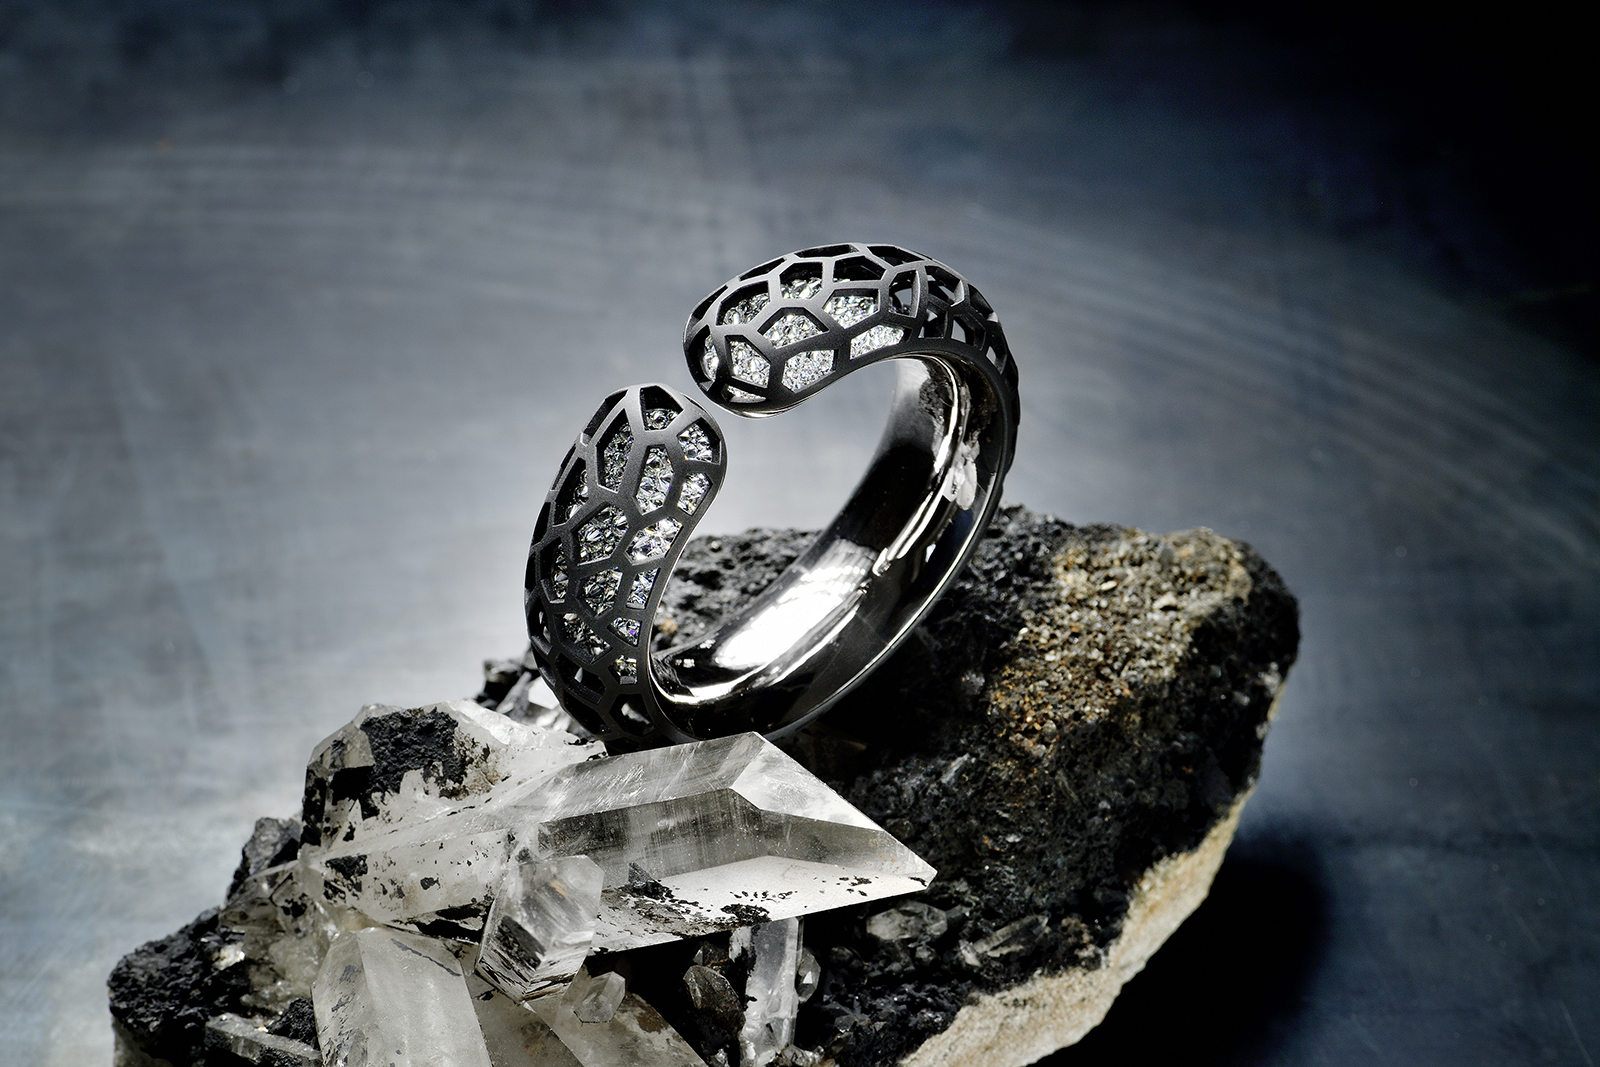 Hemmerle 'Harmony' bangle with reverse set diamonds, iron, silver and white gold. Image courtesy of Hemmerle